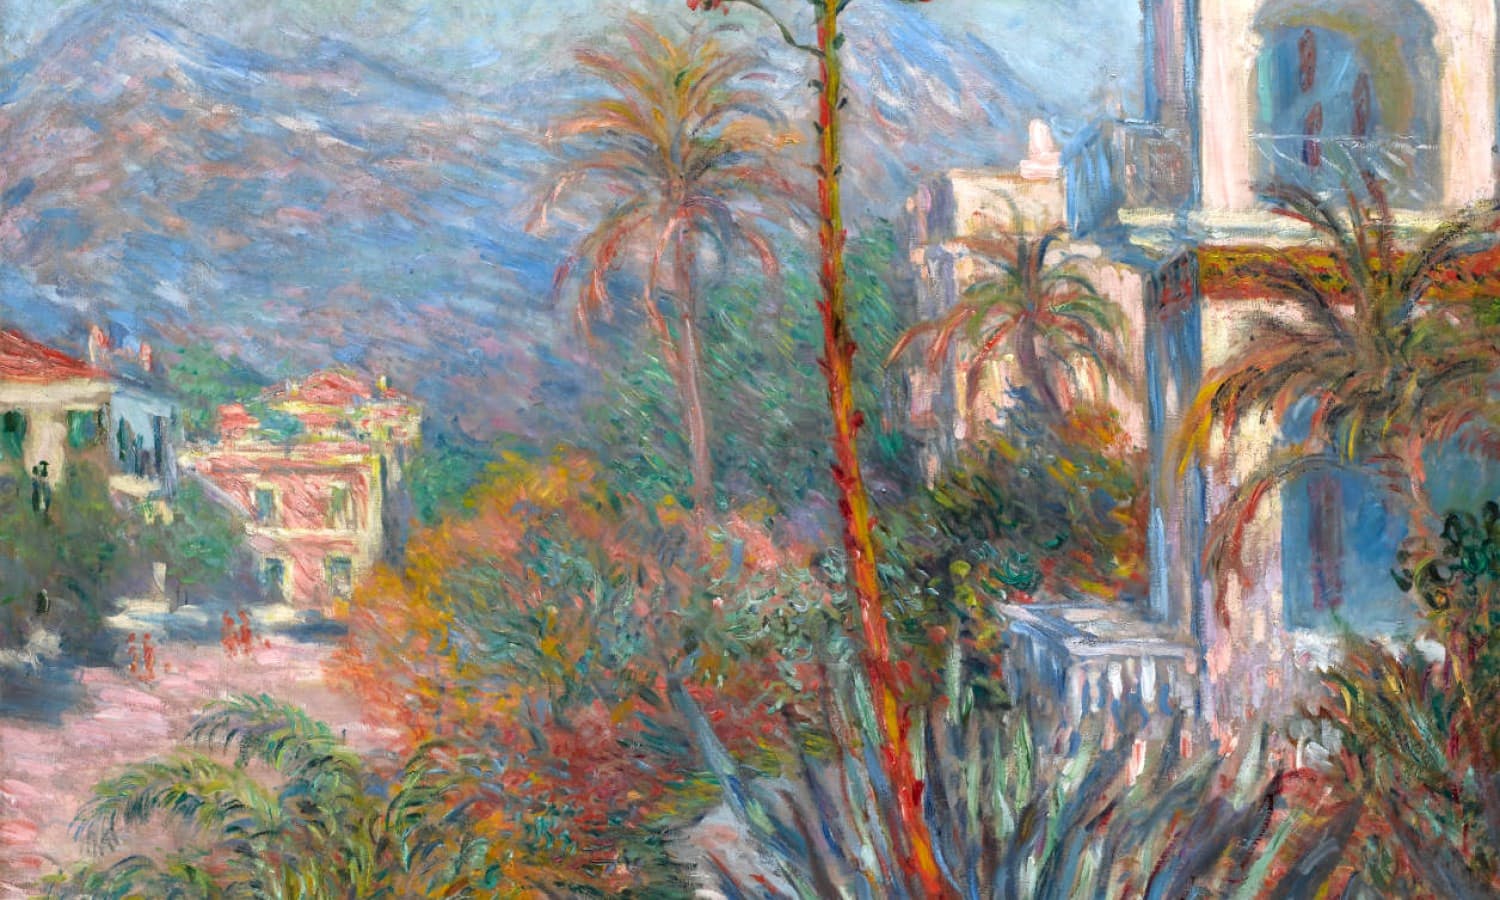 Claude+Monet-1840-1926 (373).jpeg